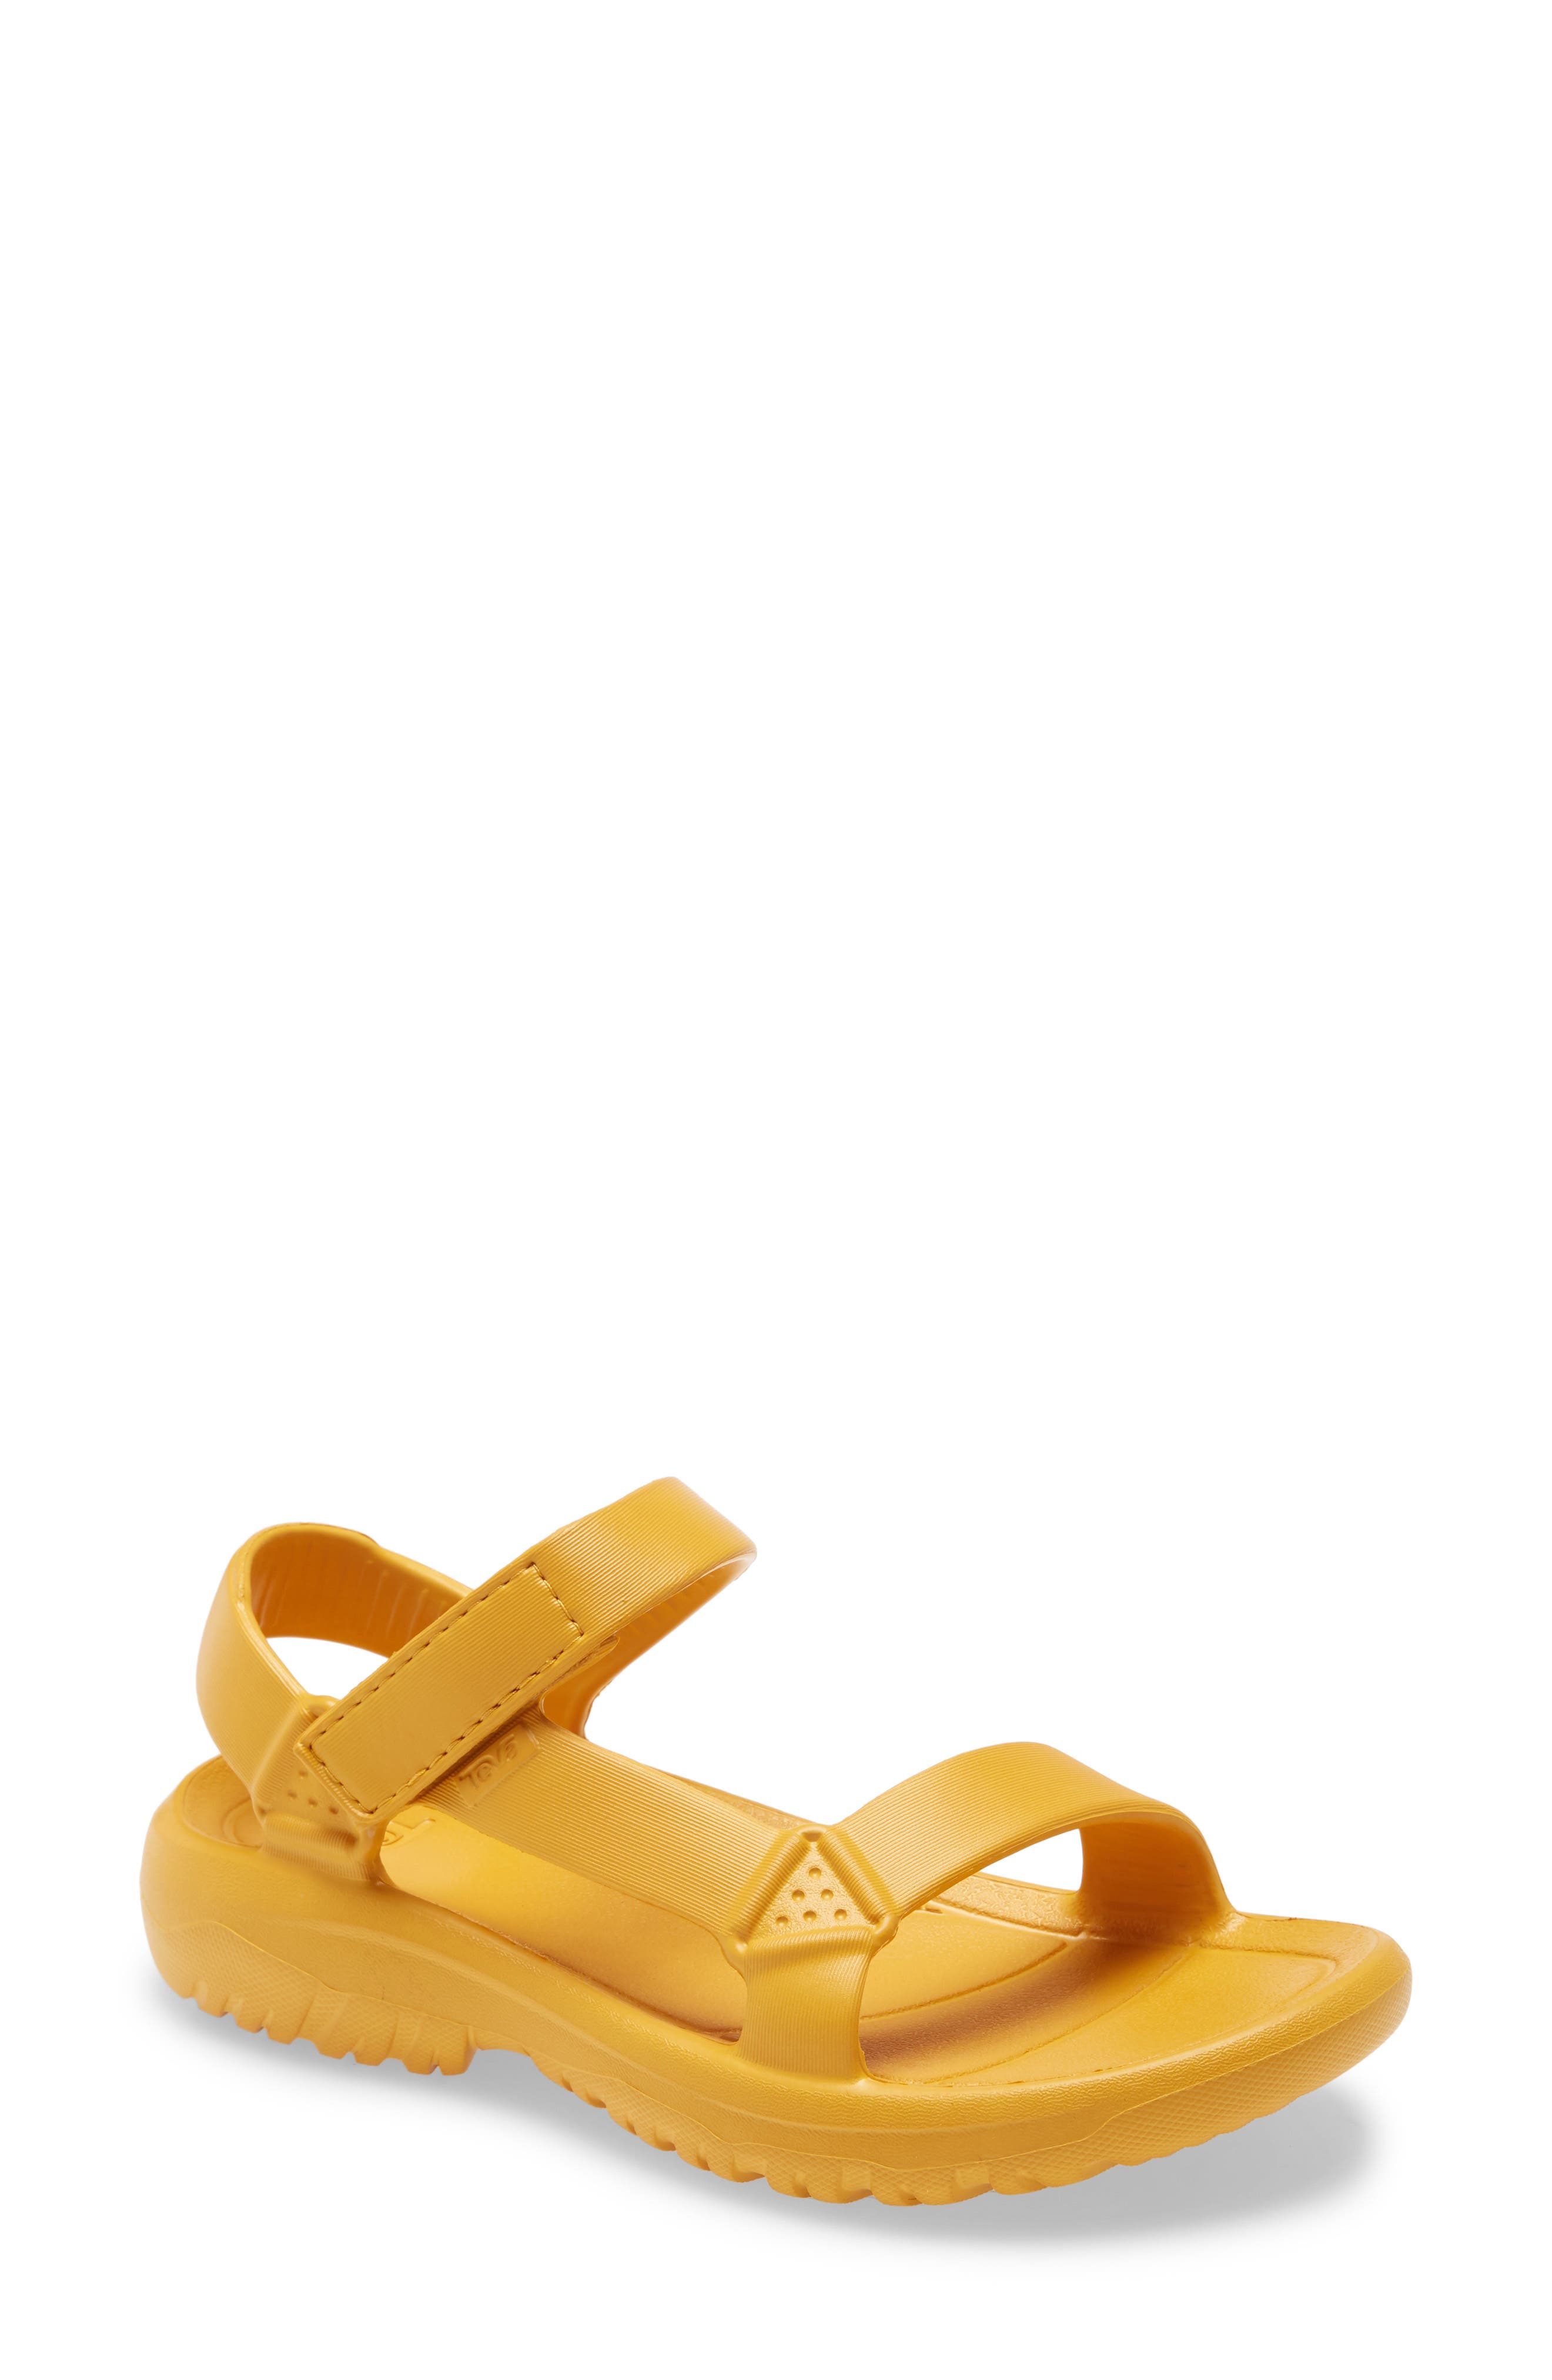 nordstrom yellow heels